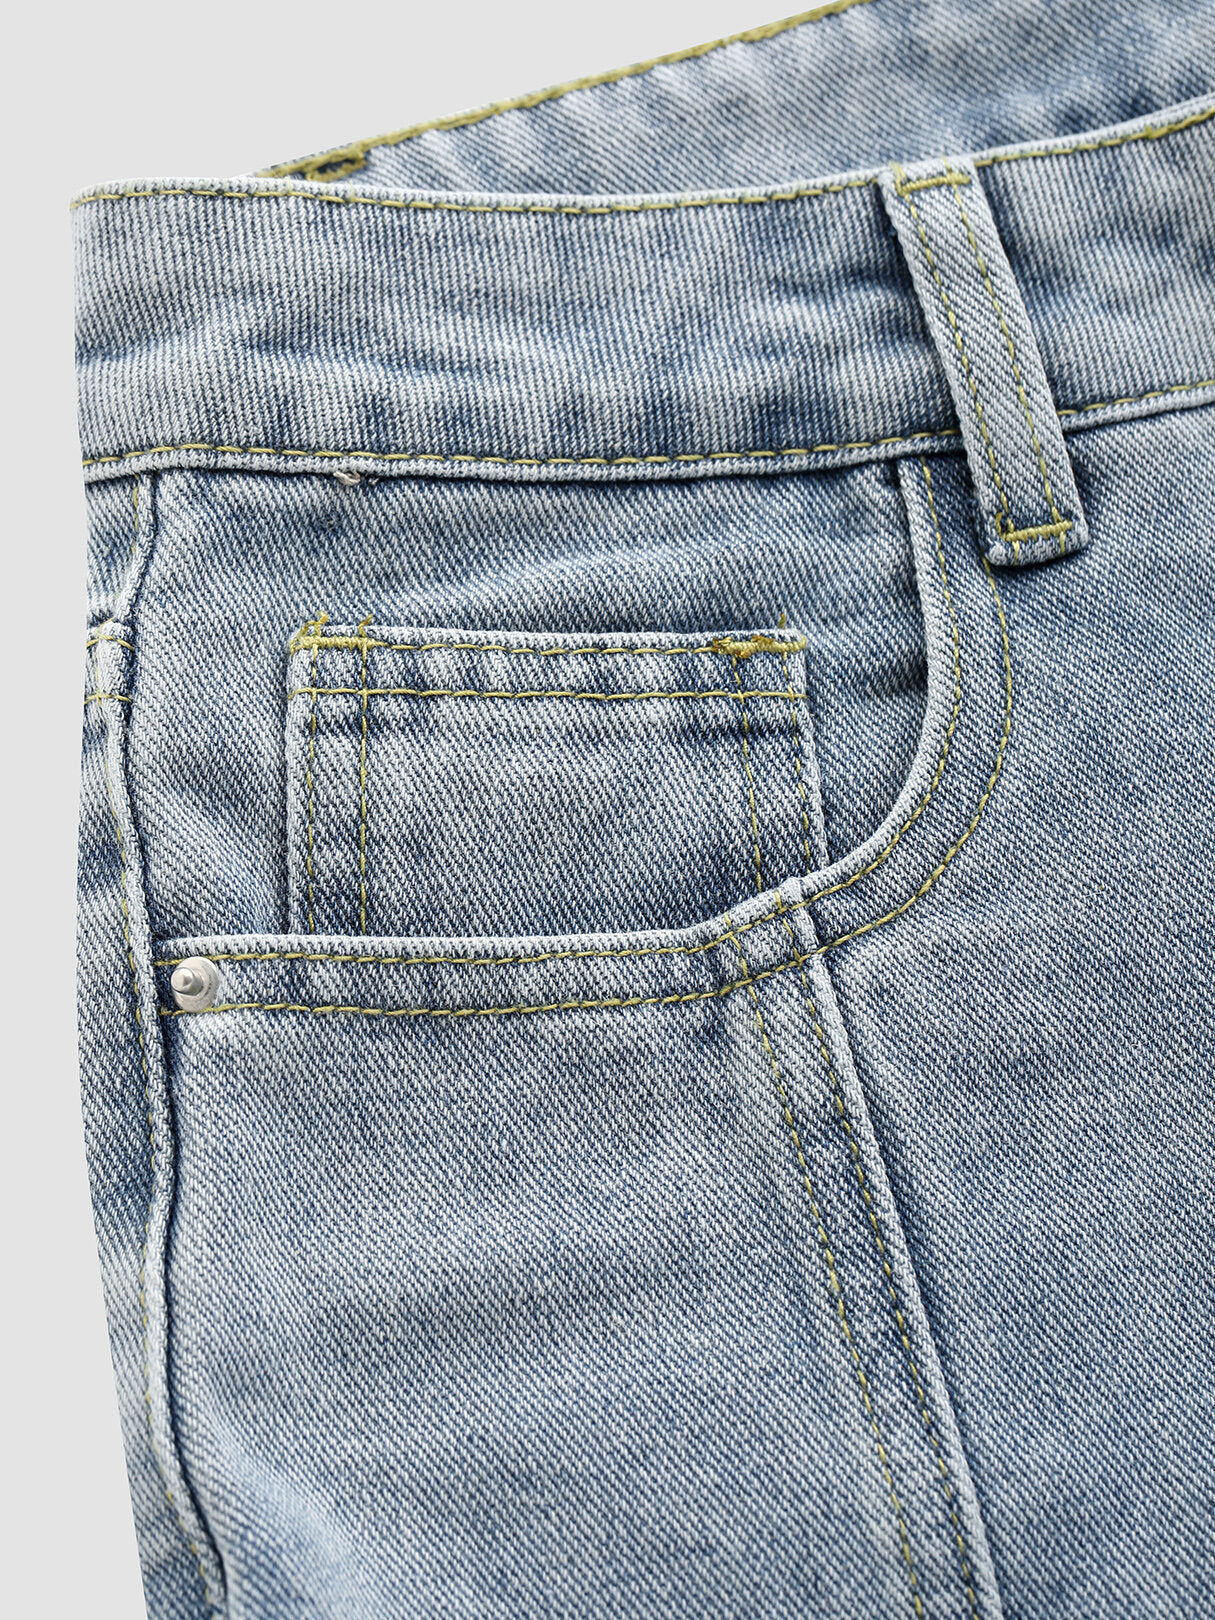 Solid Slit Pocket Cotton Jeans